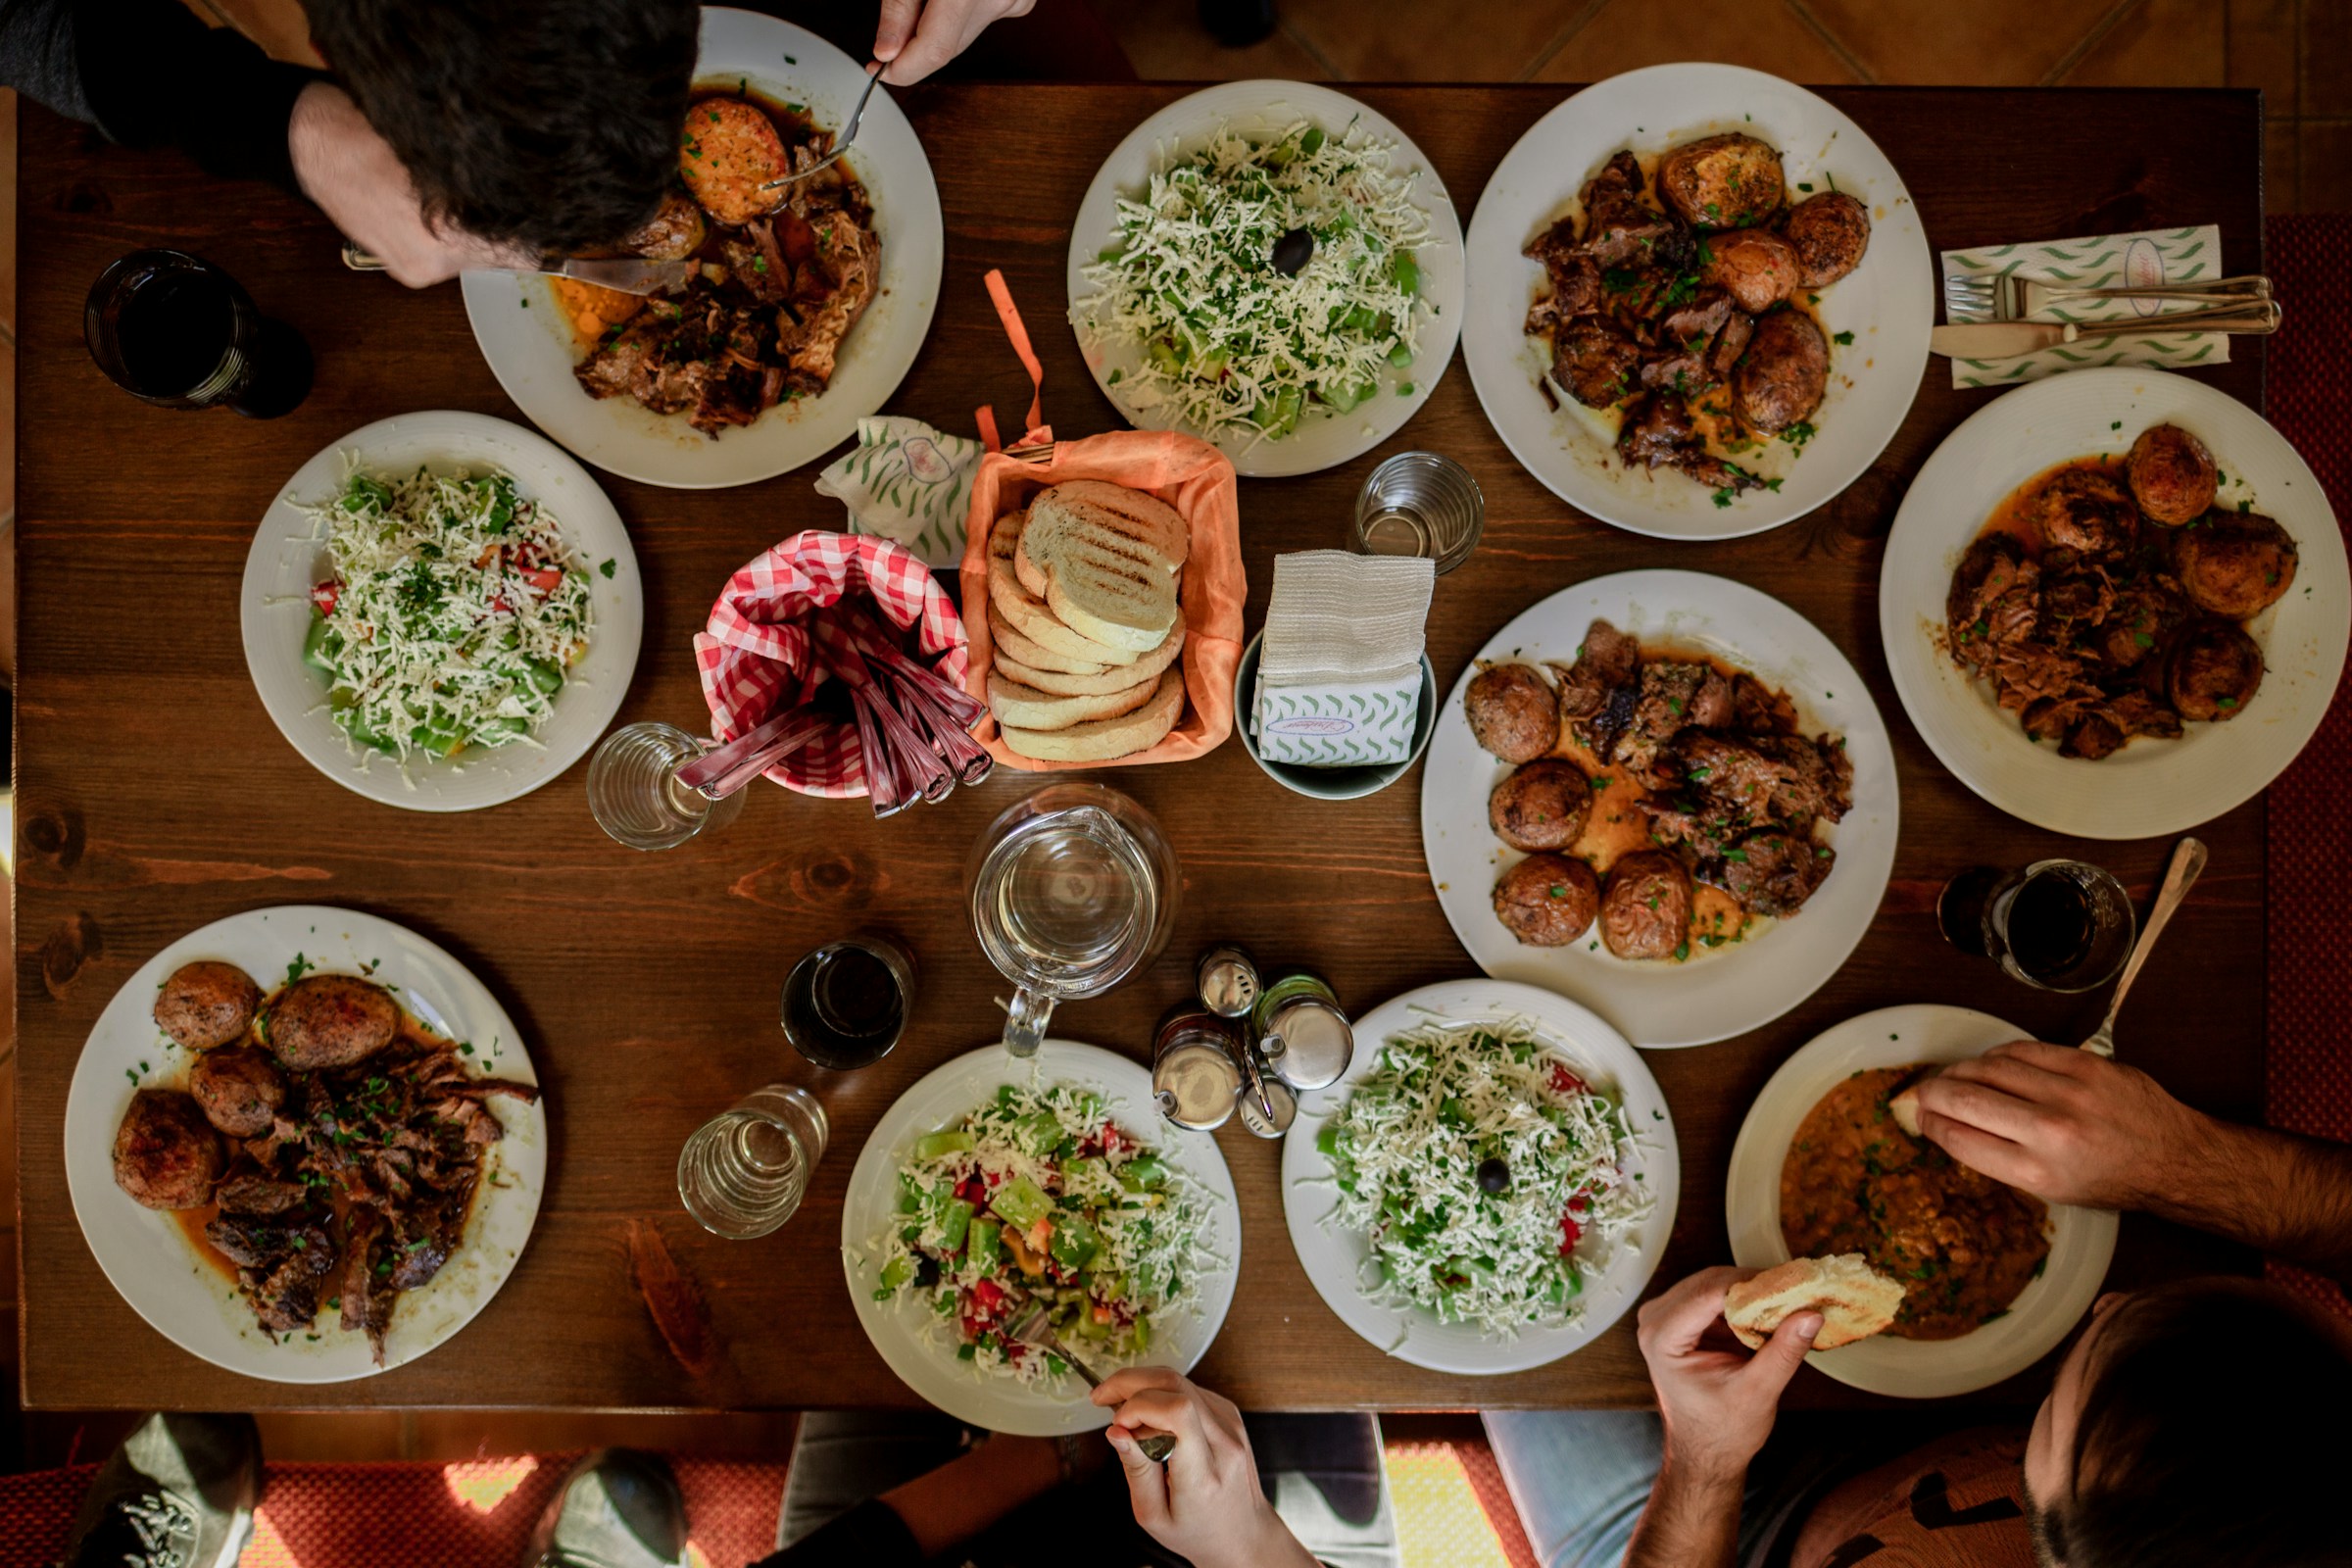 Table full of food | Source: Unsplash